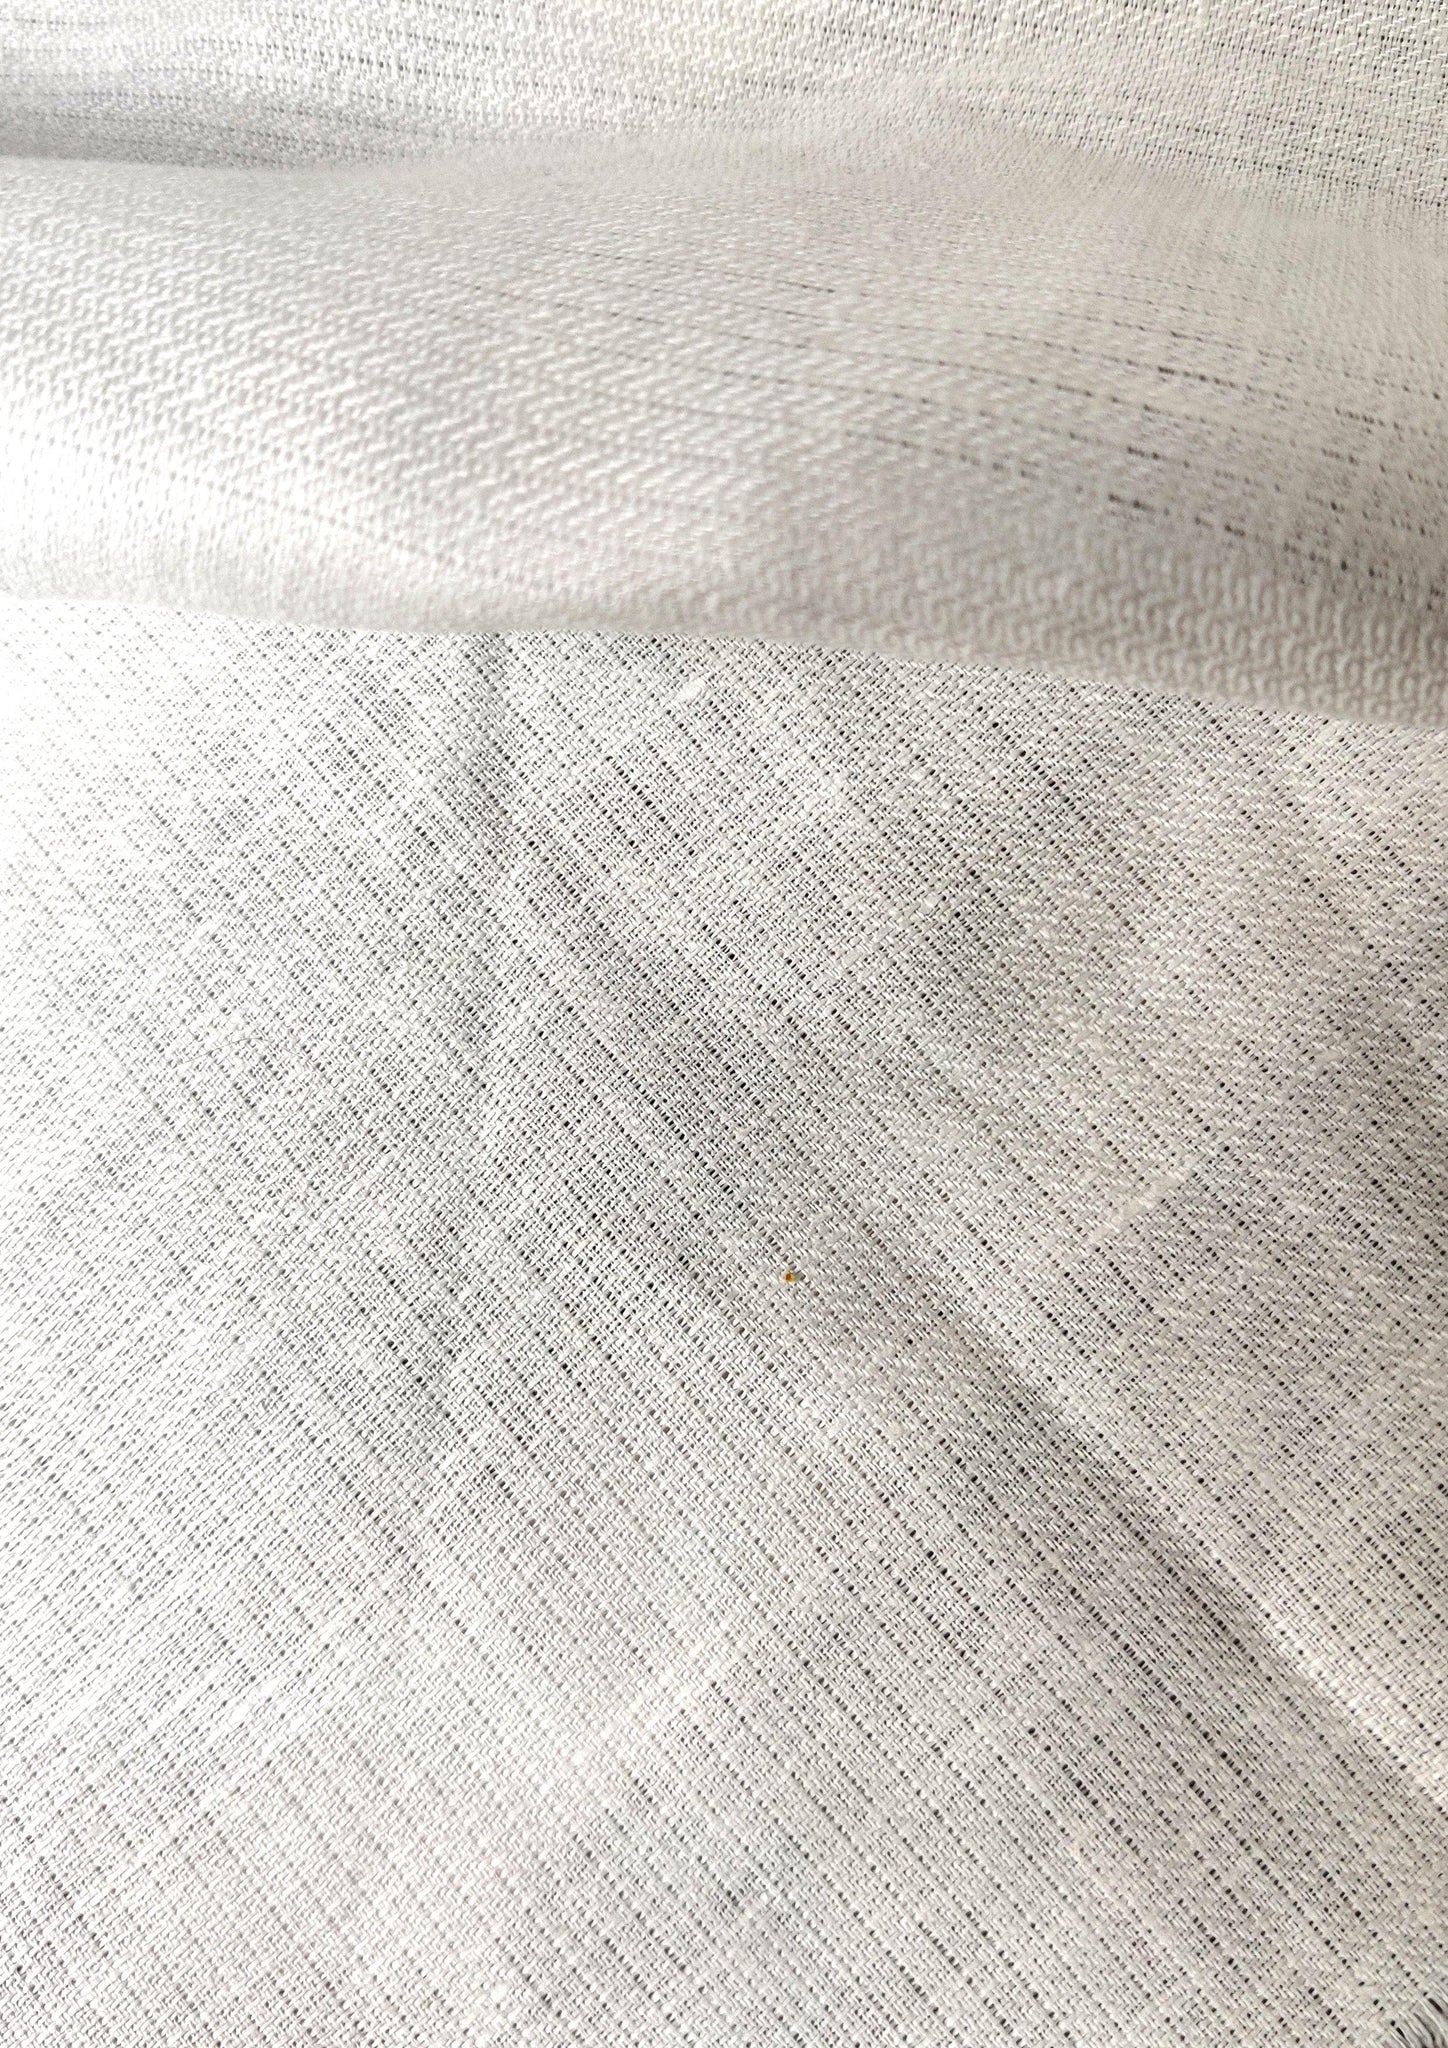 Hemp, Linen, Excell- Blended Woven Fabric - Hemp Republic